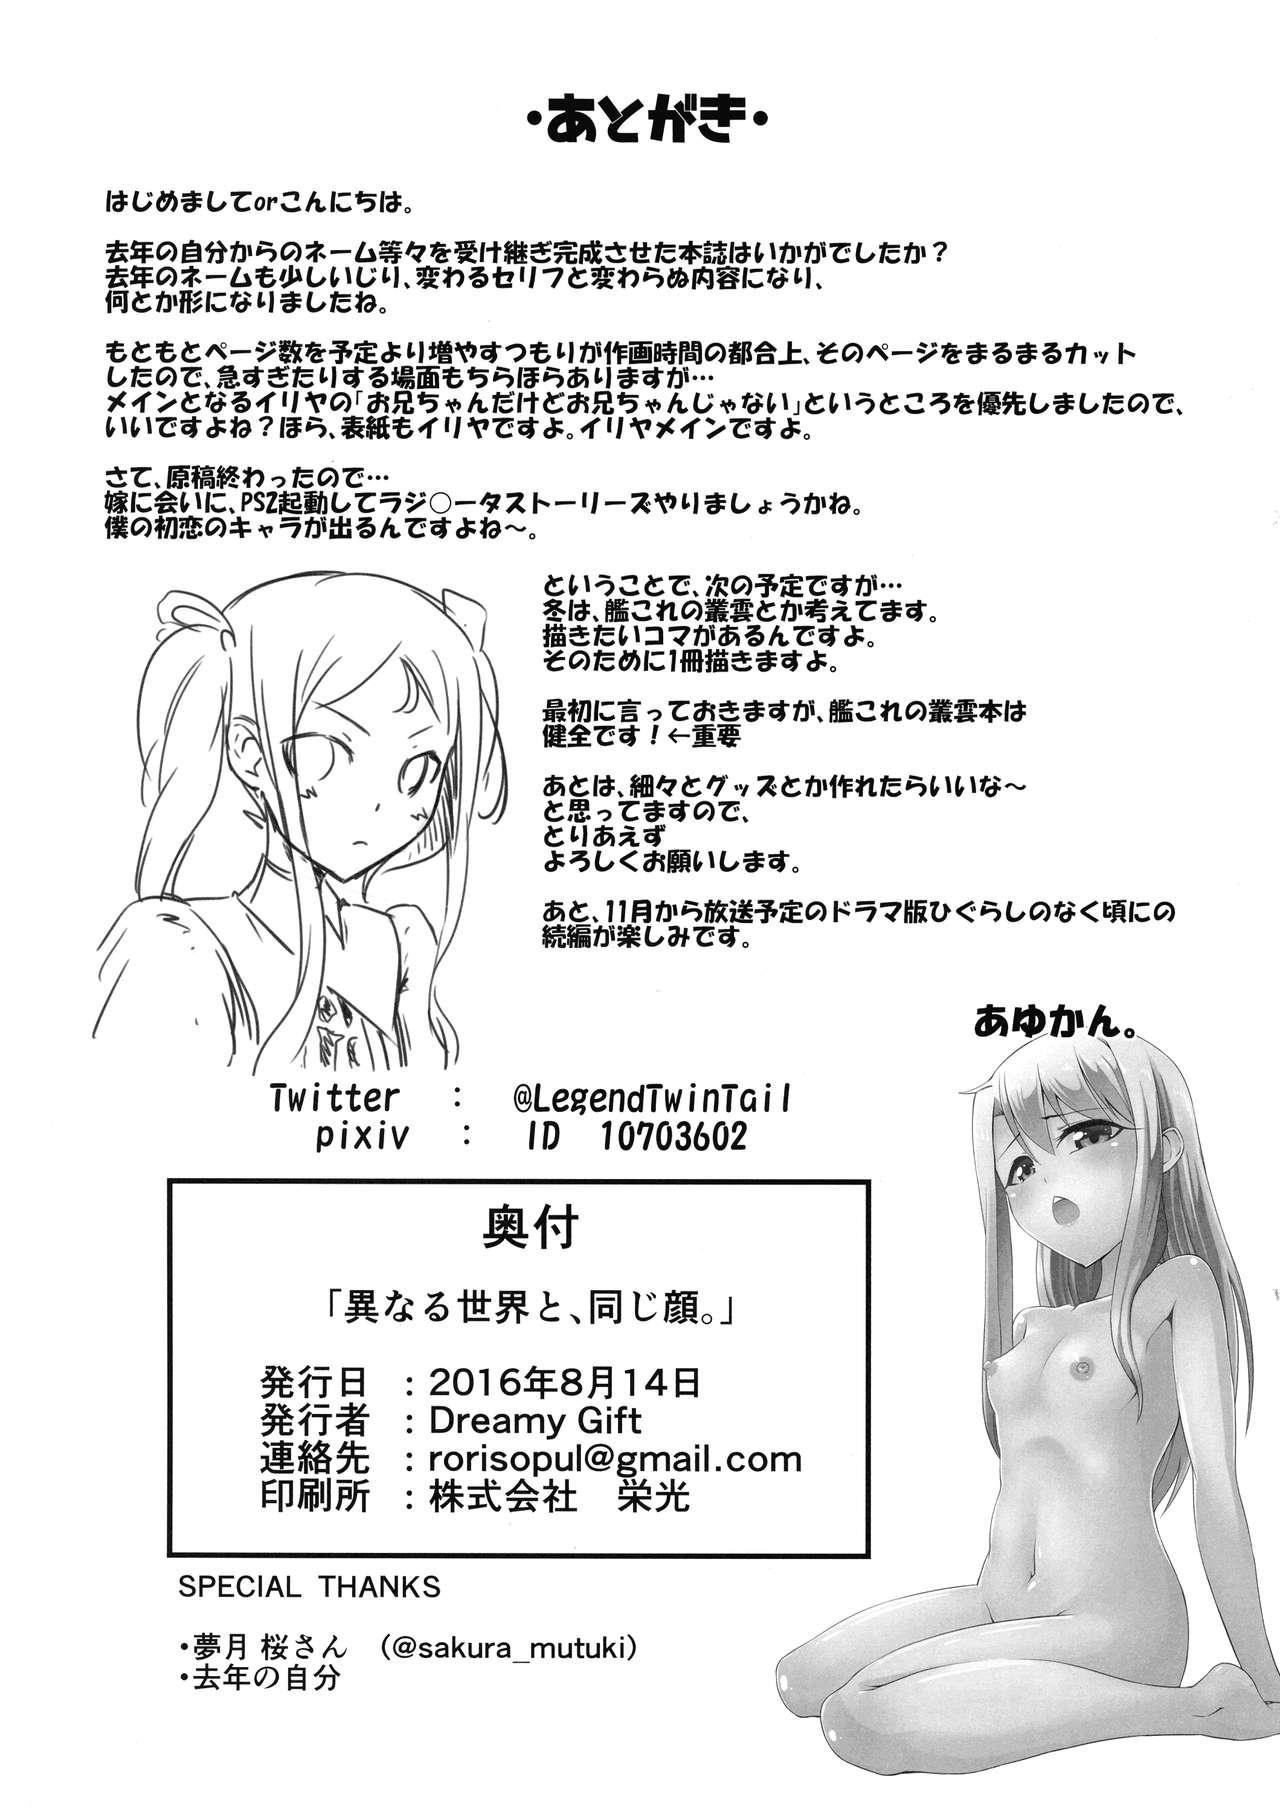 Ftvgirls Heikou Sekai to, Onaji Shirou. - Fate kaleid liner prisma illya Francais - Page 26